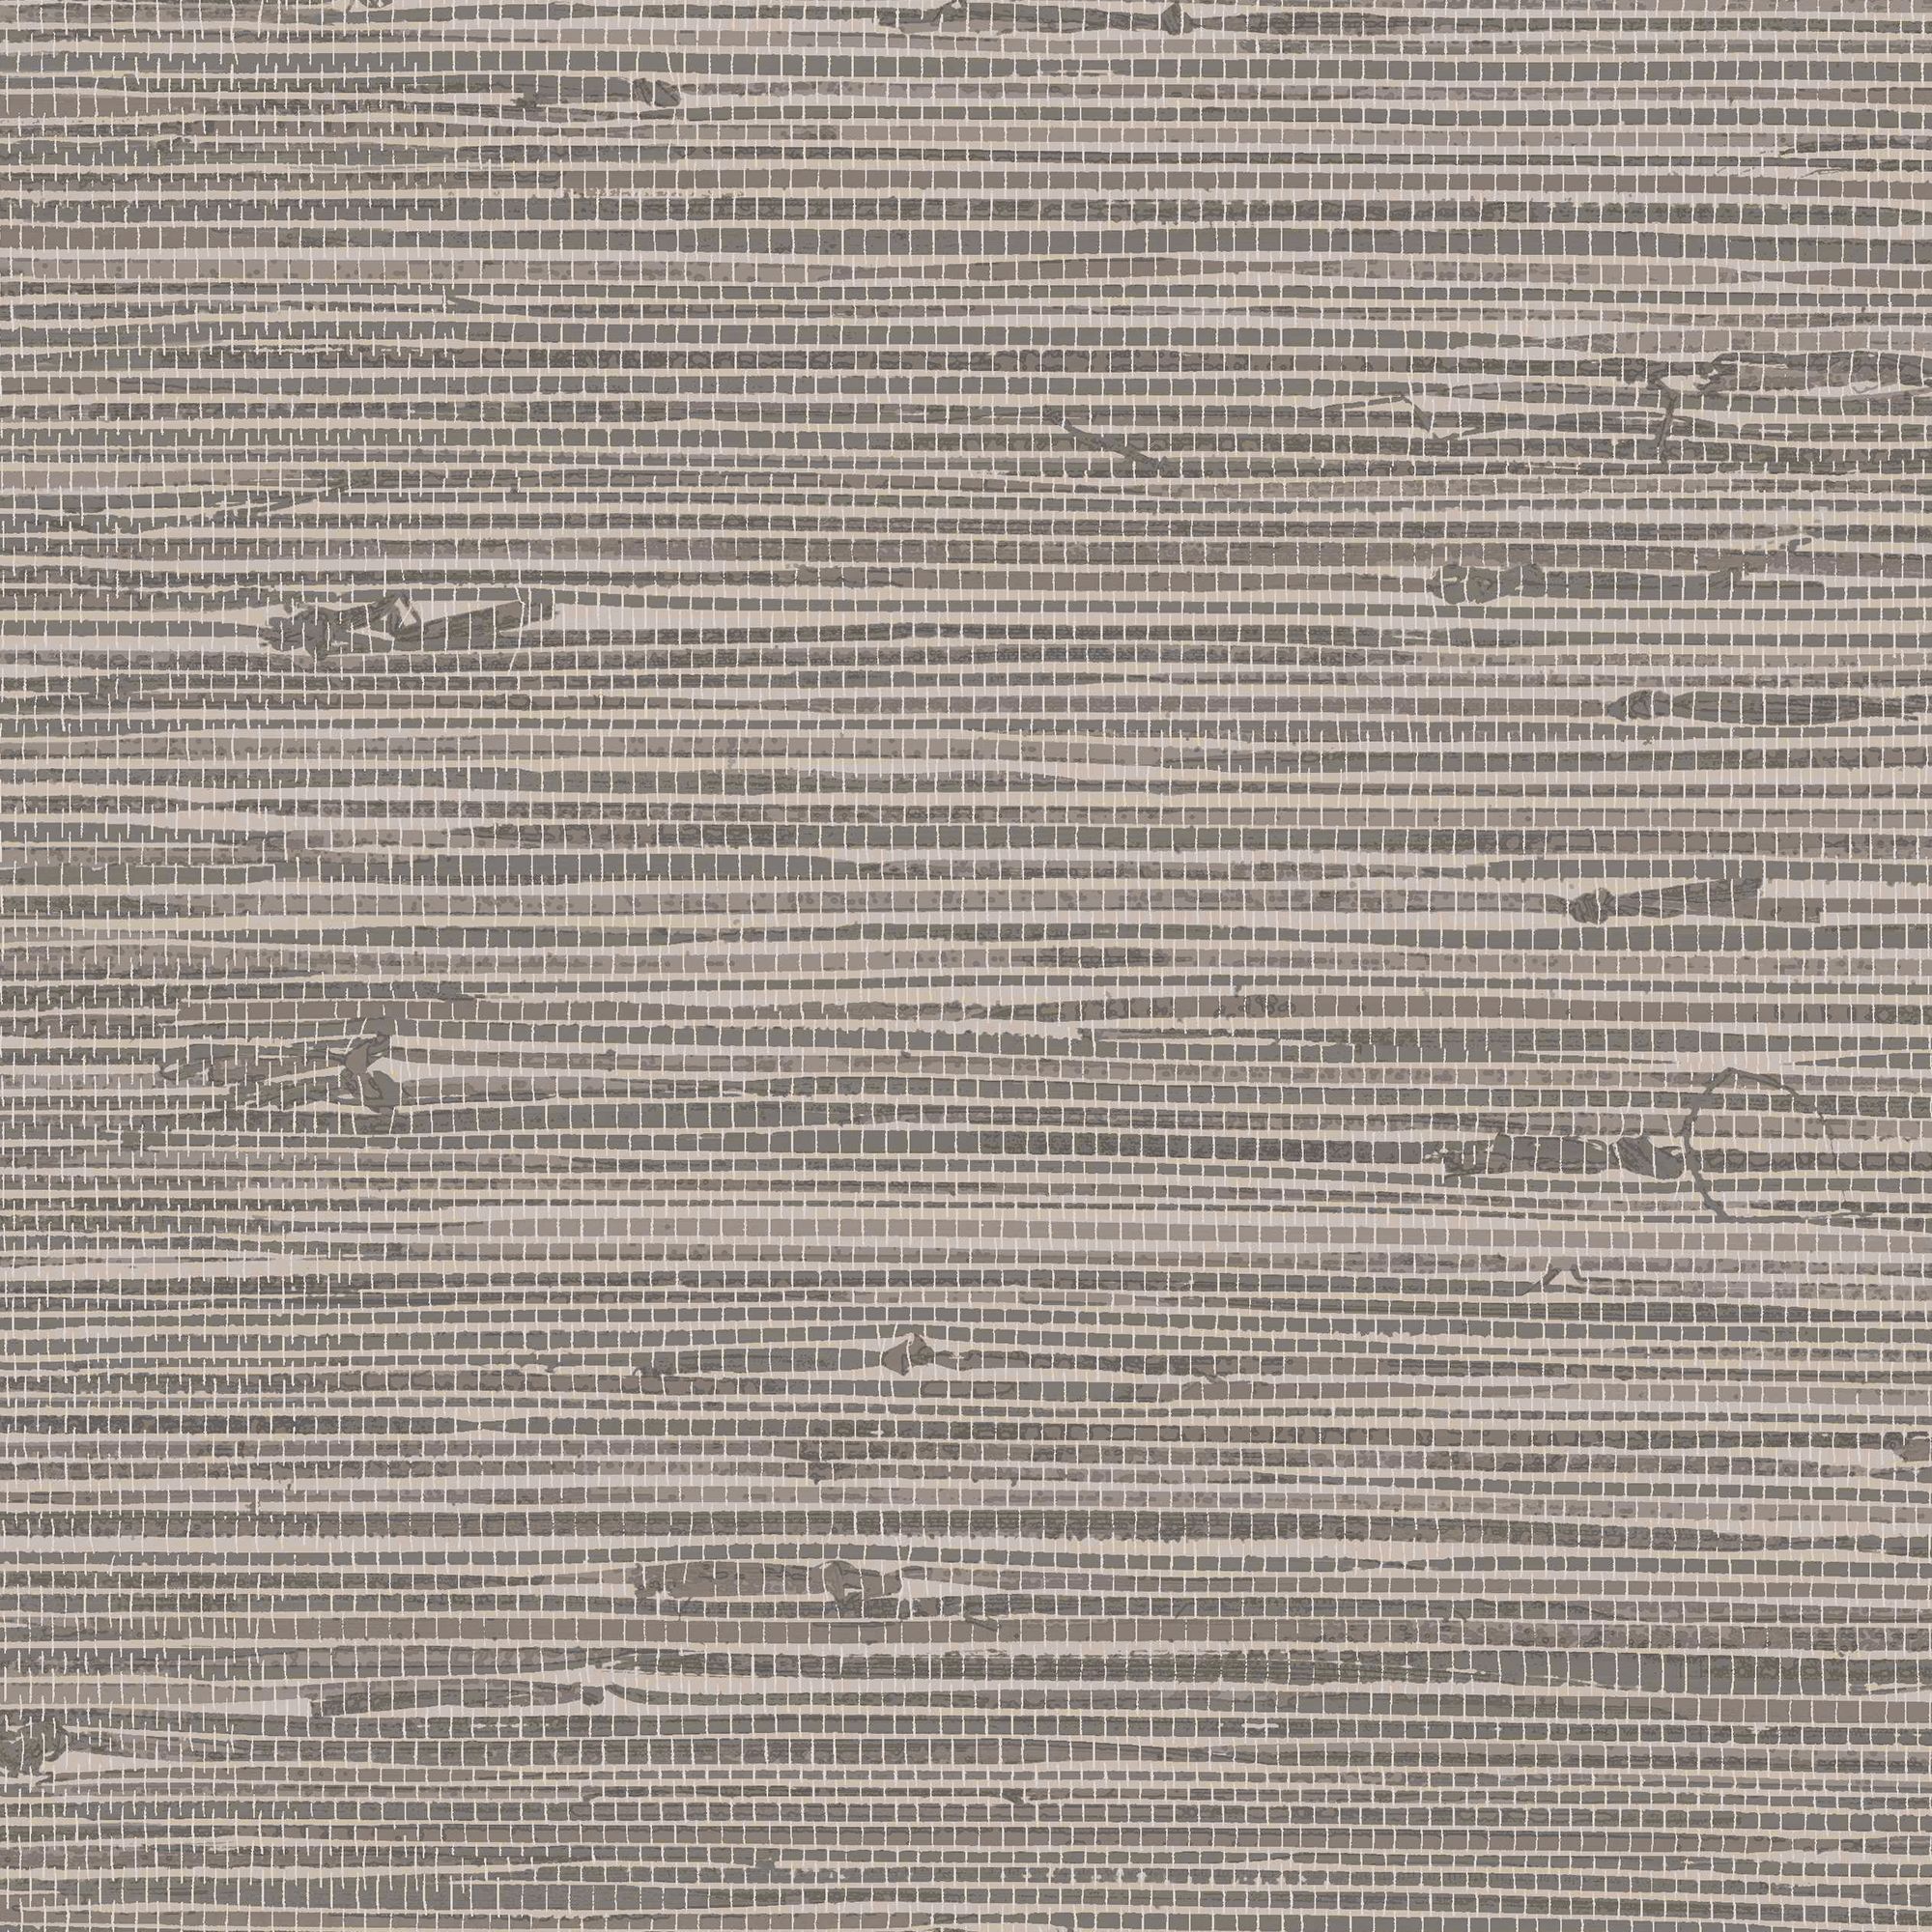 Fine Decor Stone Grasscloth Textured Wallpaper